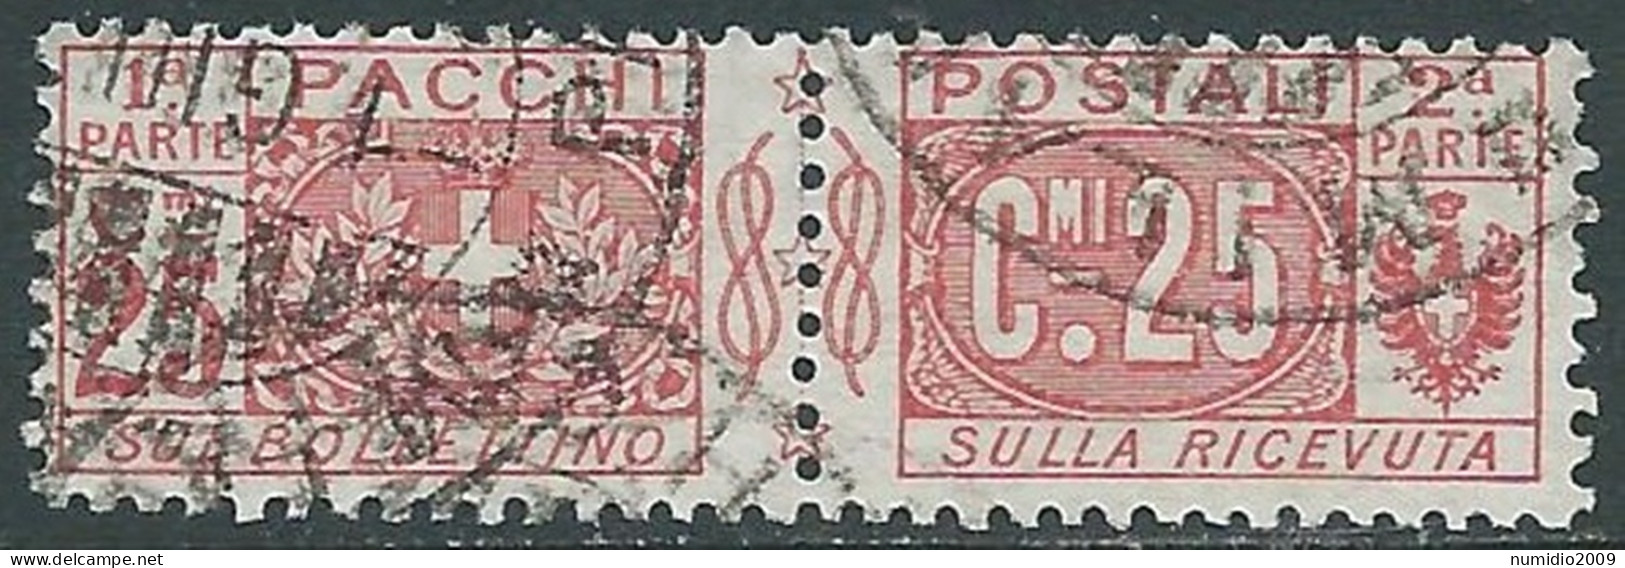 1914-22 REGNO PACCHI POSTALI USATO 25 CENT - P31-9 - Paketmarken